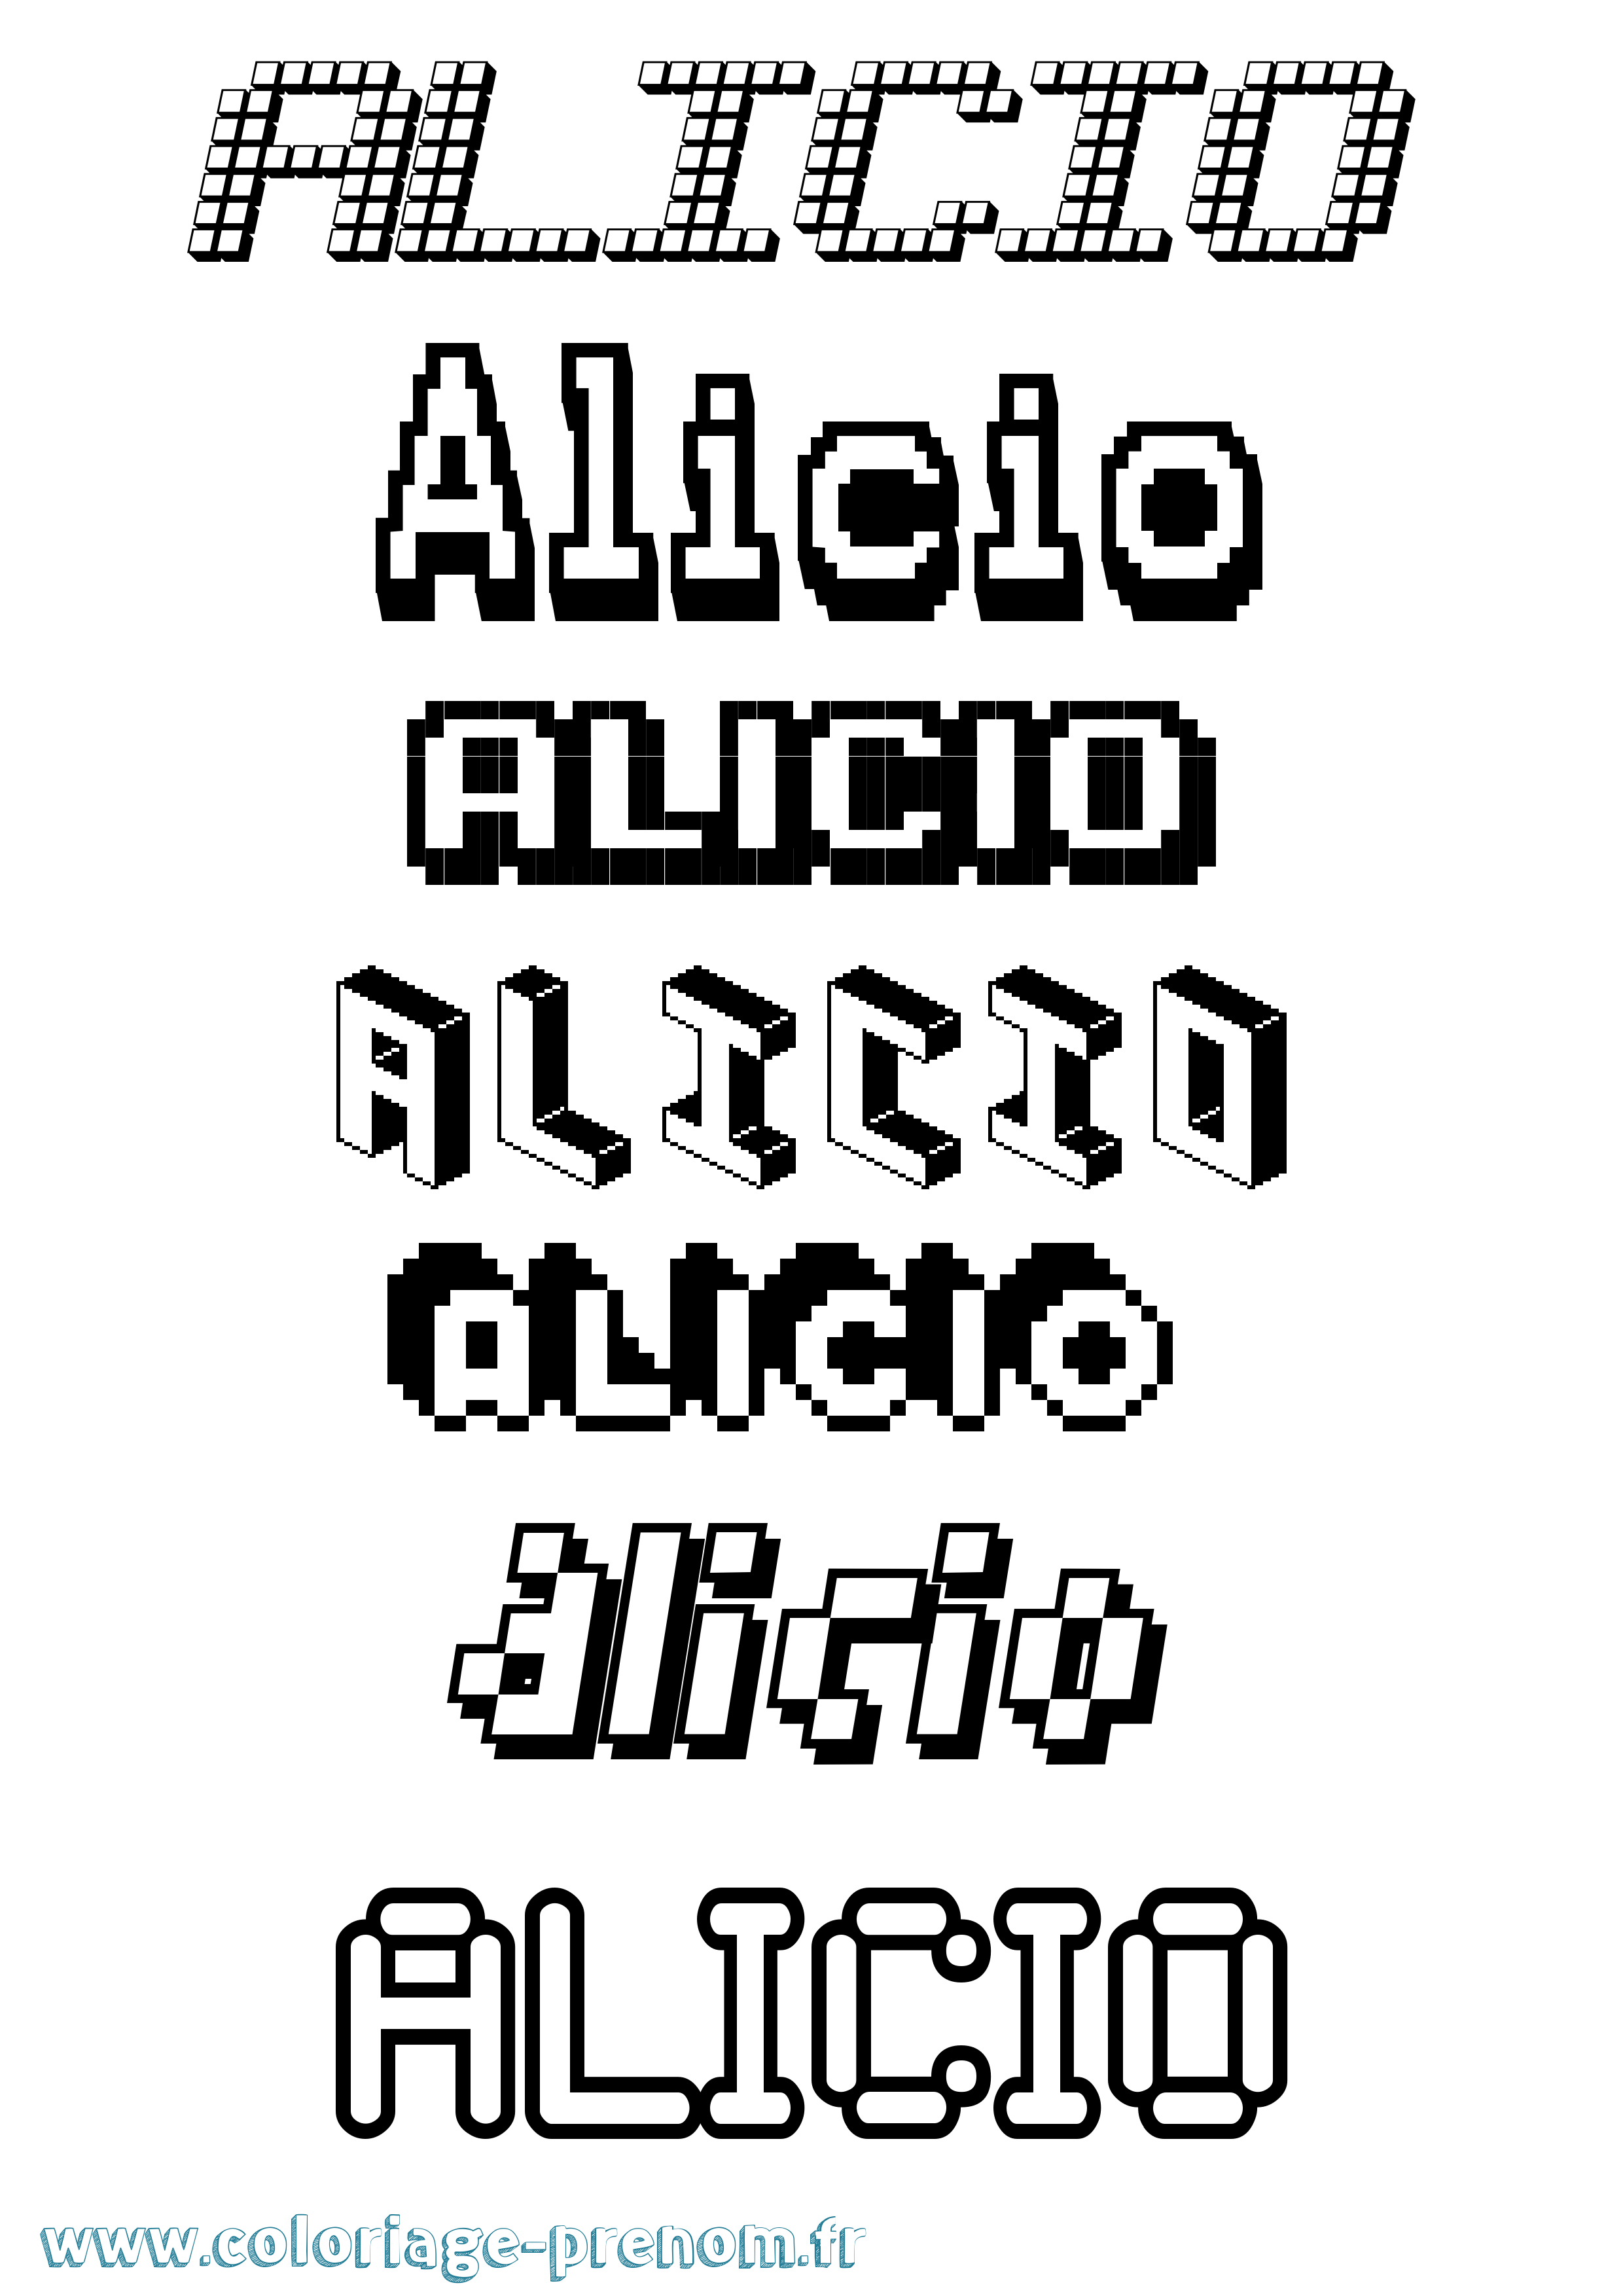 Coloriage prénom Alicio Pixel